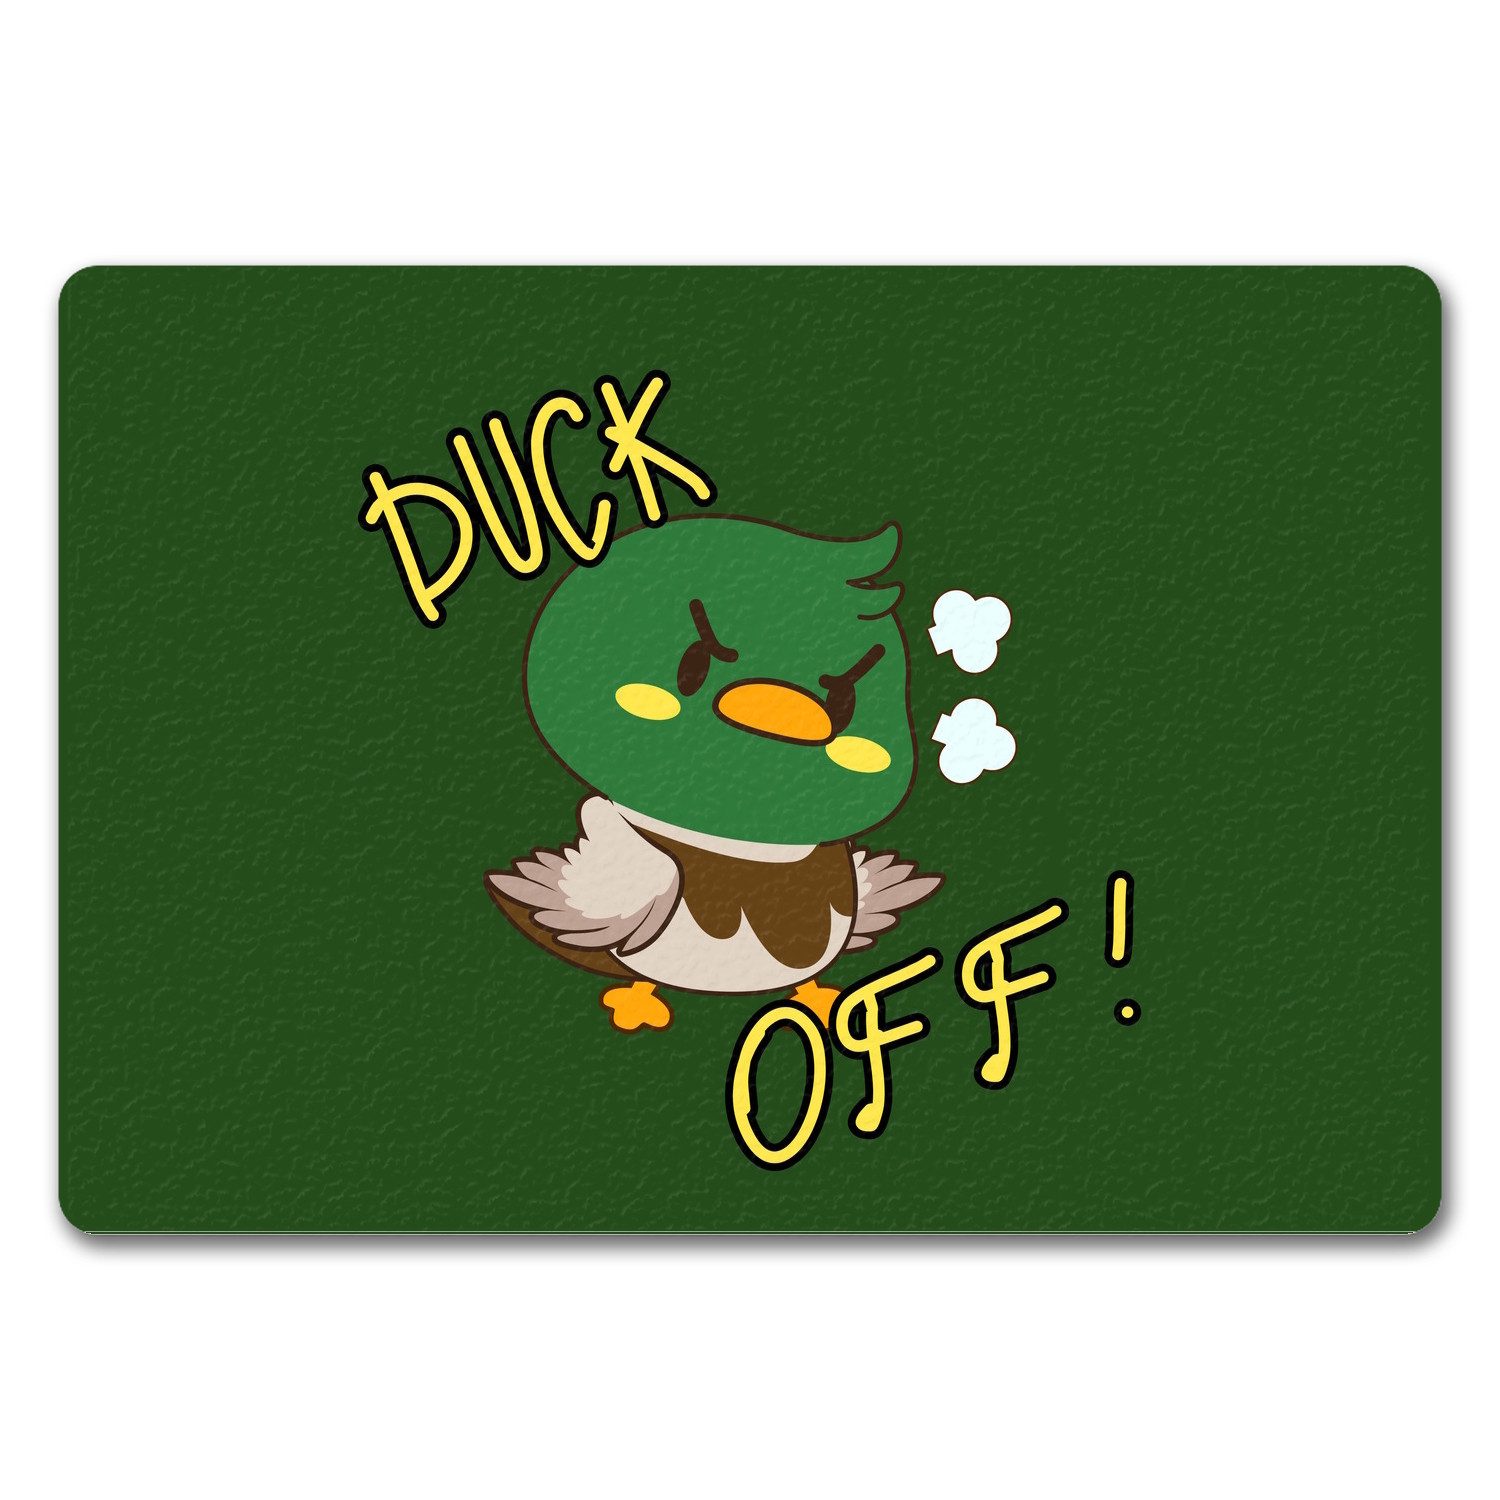 Fußmatte Enten Fußmatte in 35x50 cm ohne Rand mit Spruch DUCK OFF! in grün, speecheese